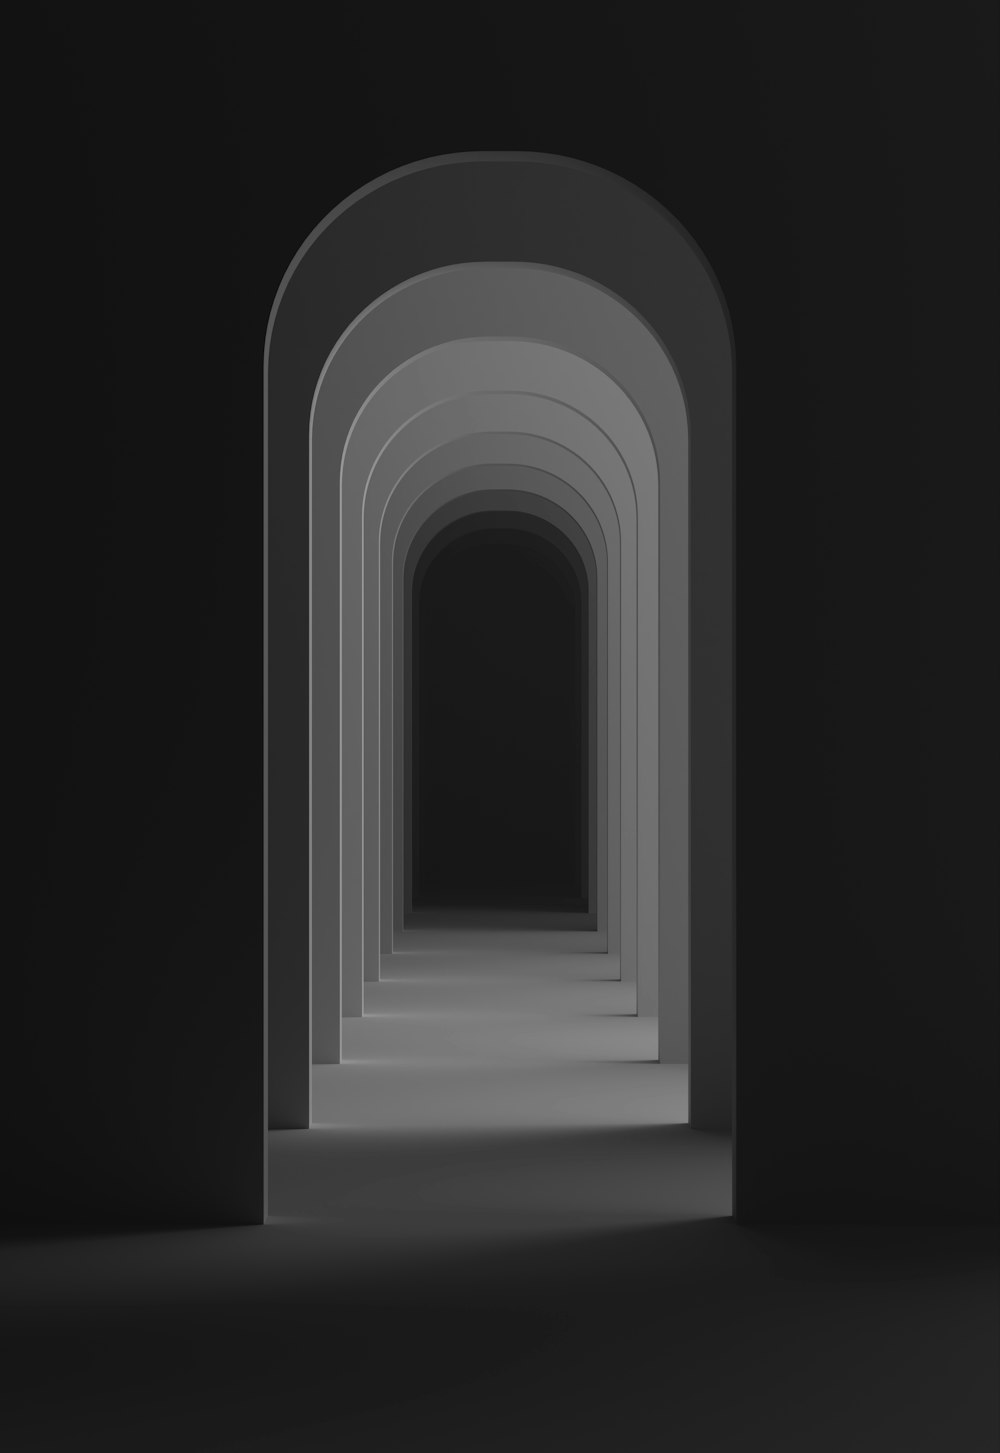 un túnel oscuro con una luz al final